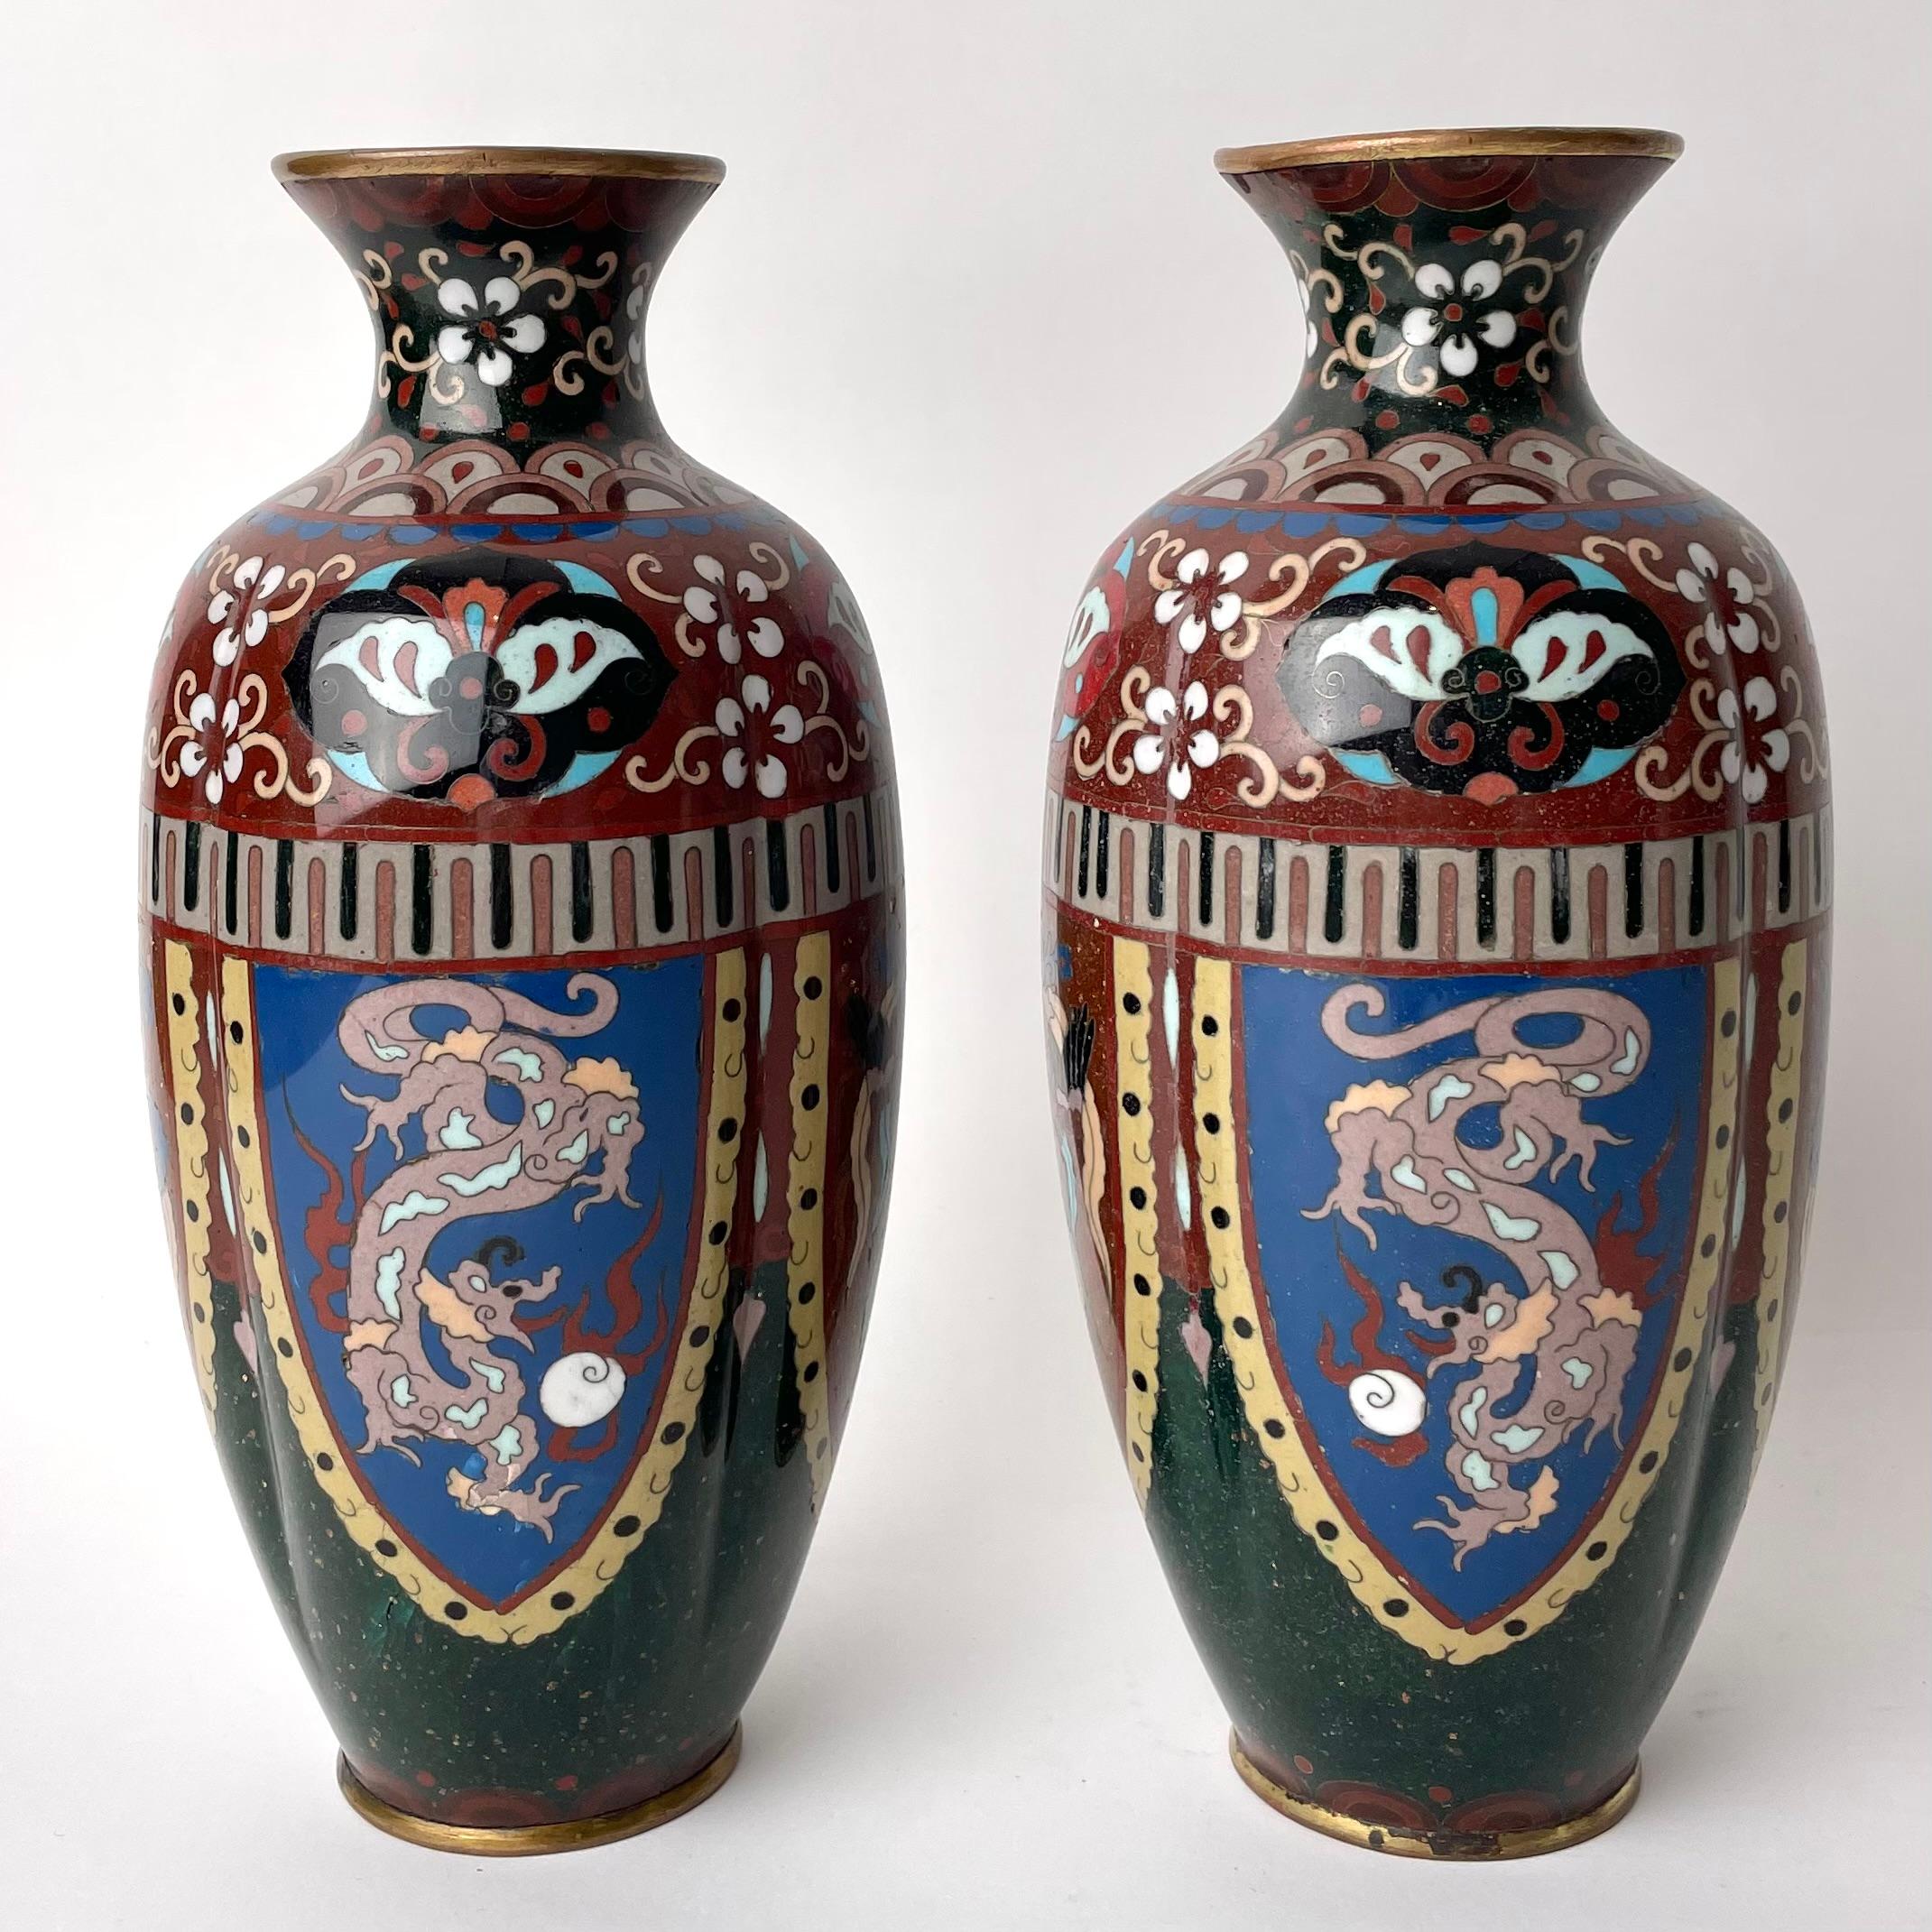 Paire de vases japonais en émail cloisonné. Le Japon de l'ère Meiji (1867-1912), une période marquée par la transformation rapide de la société traditionnelle japonaise en une puissance mondiale. La période de croissance a été précédée d'une ère